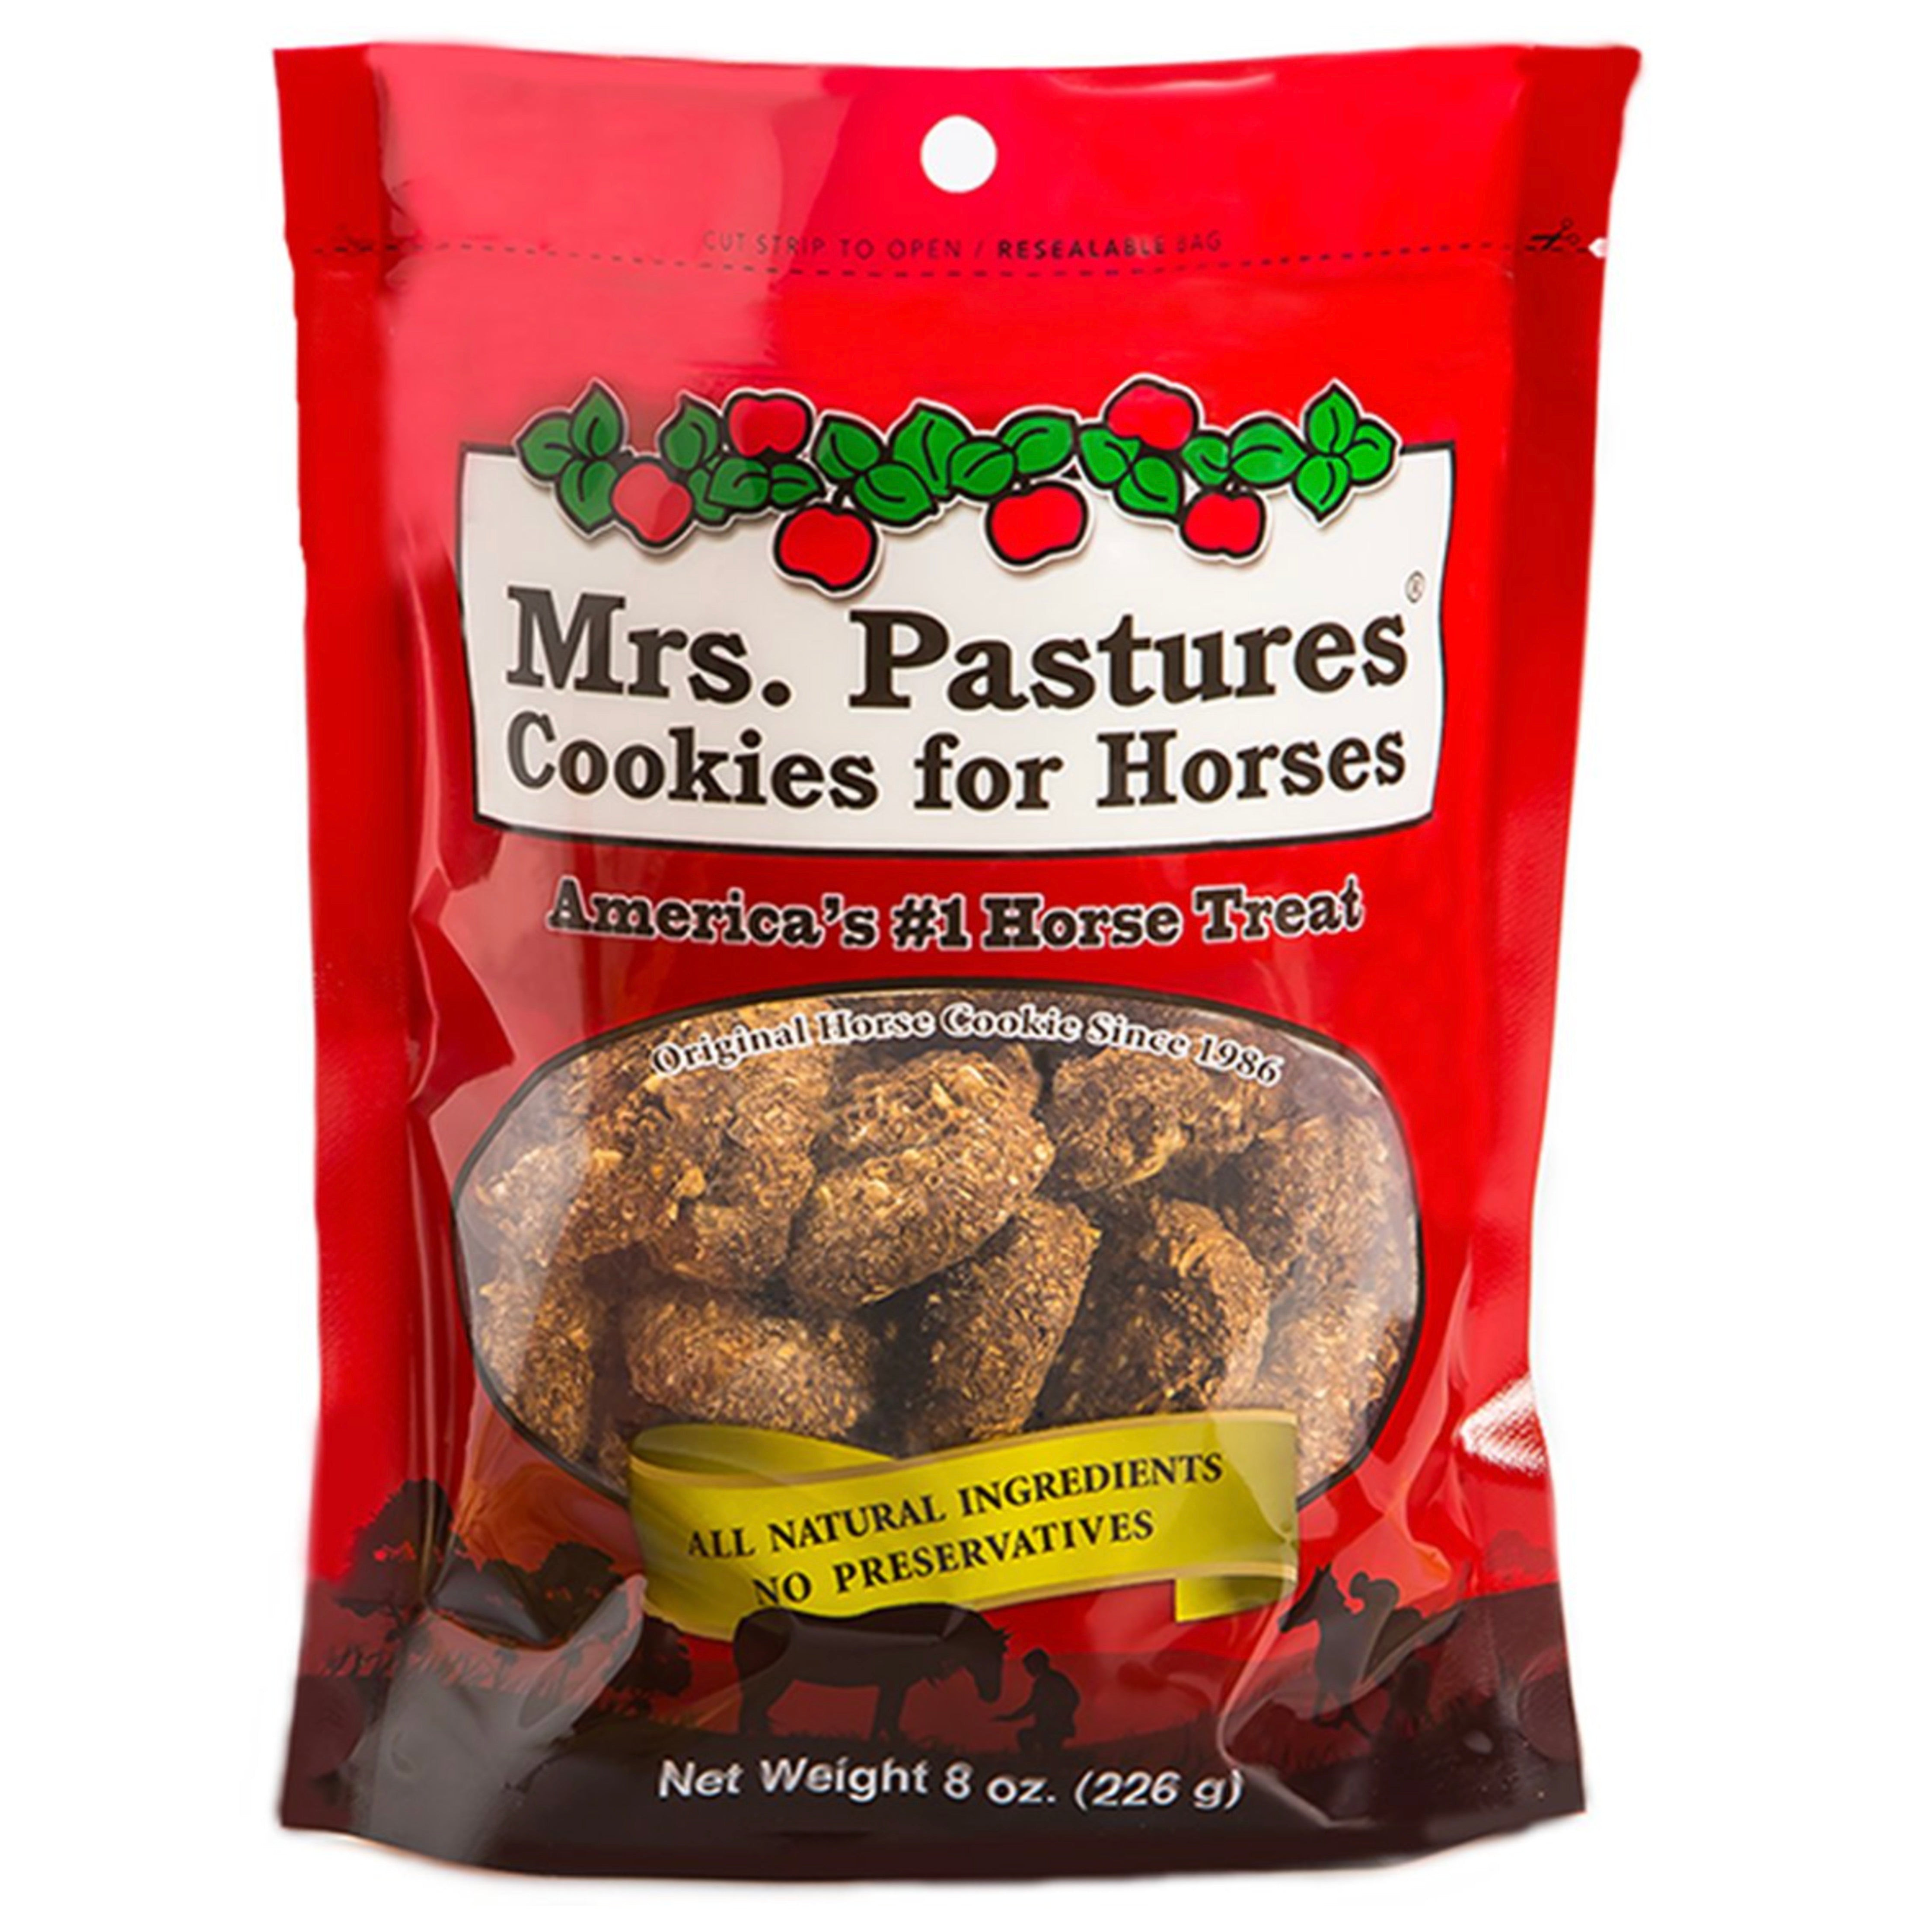 Mrs Pastures Original Cookie 8 oz